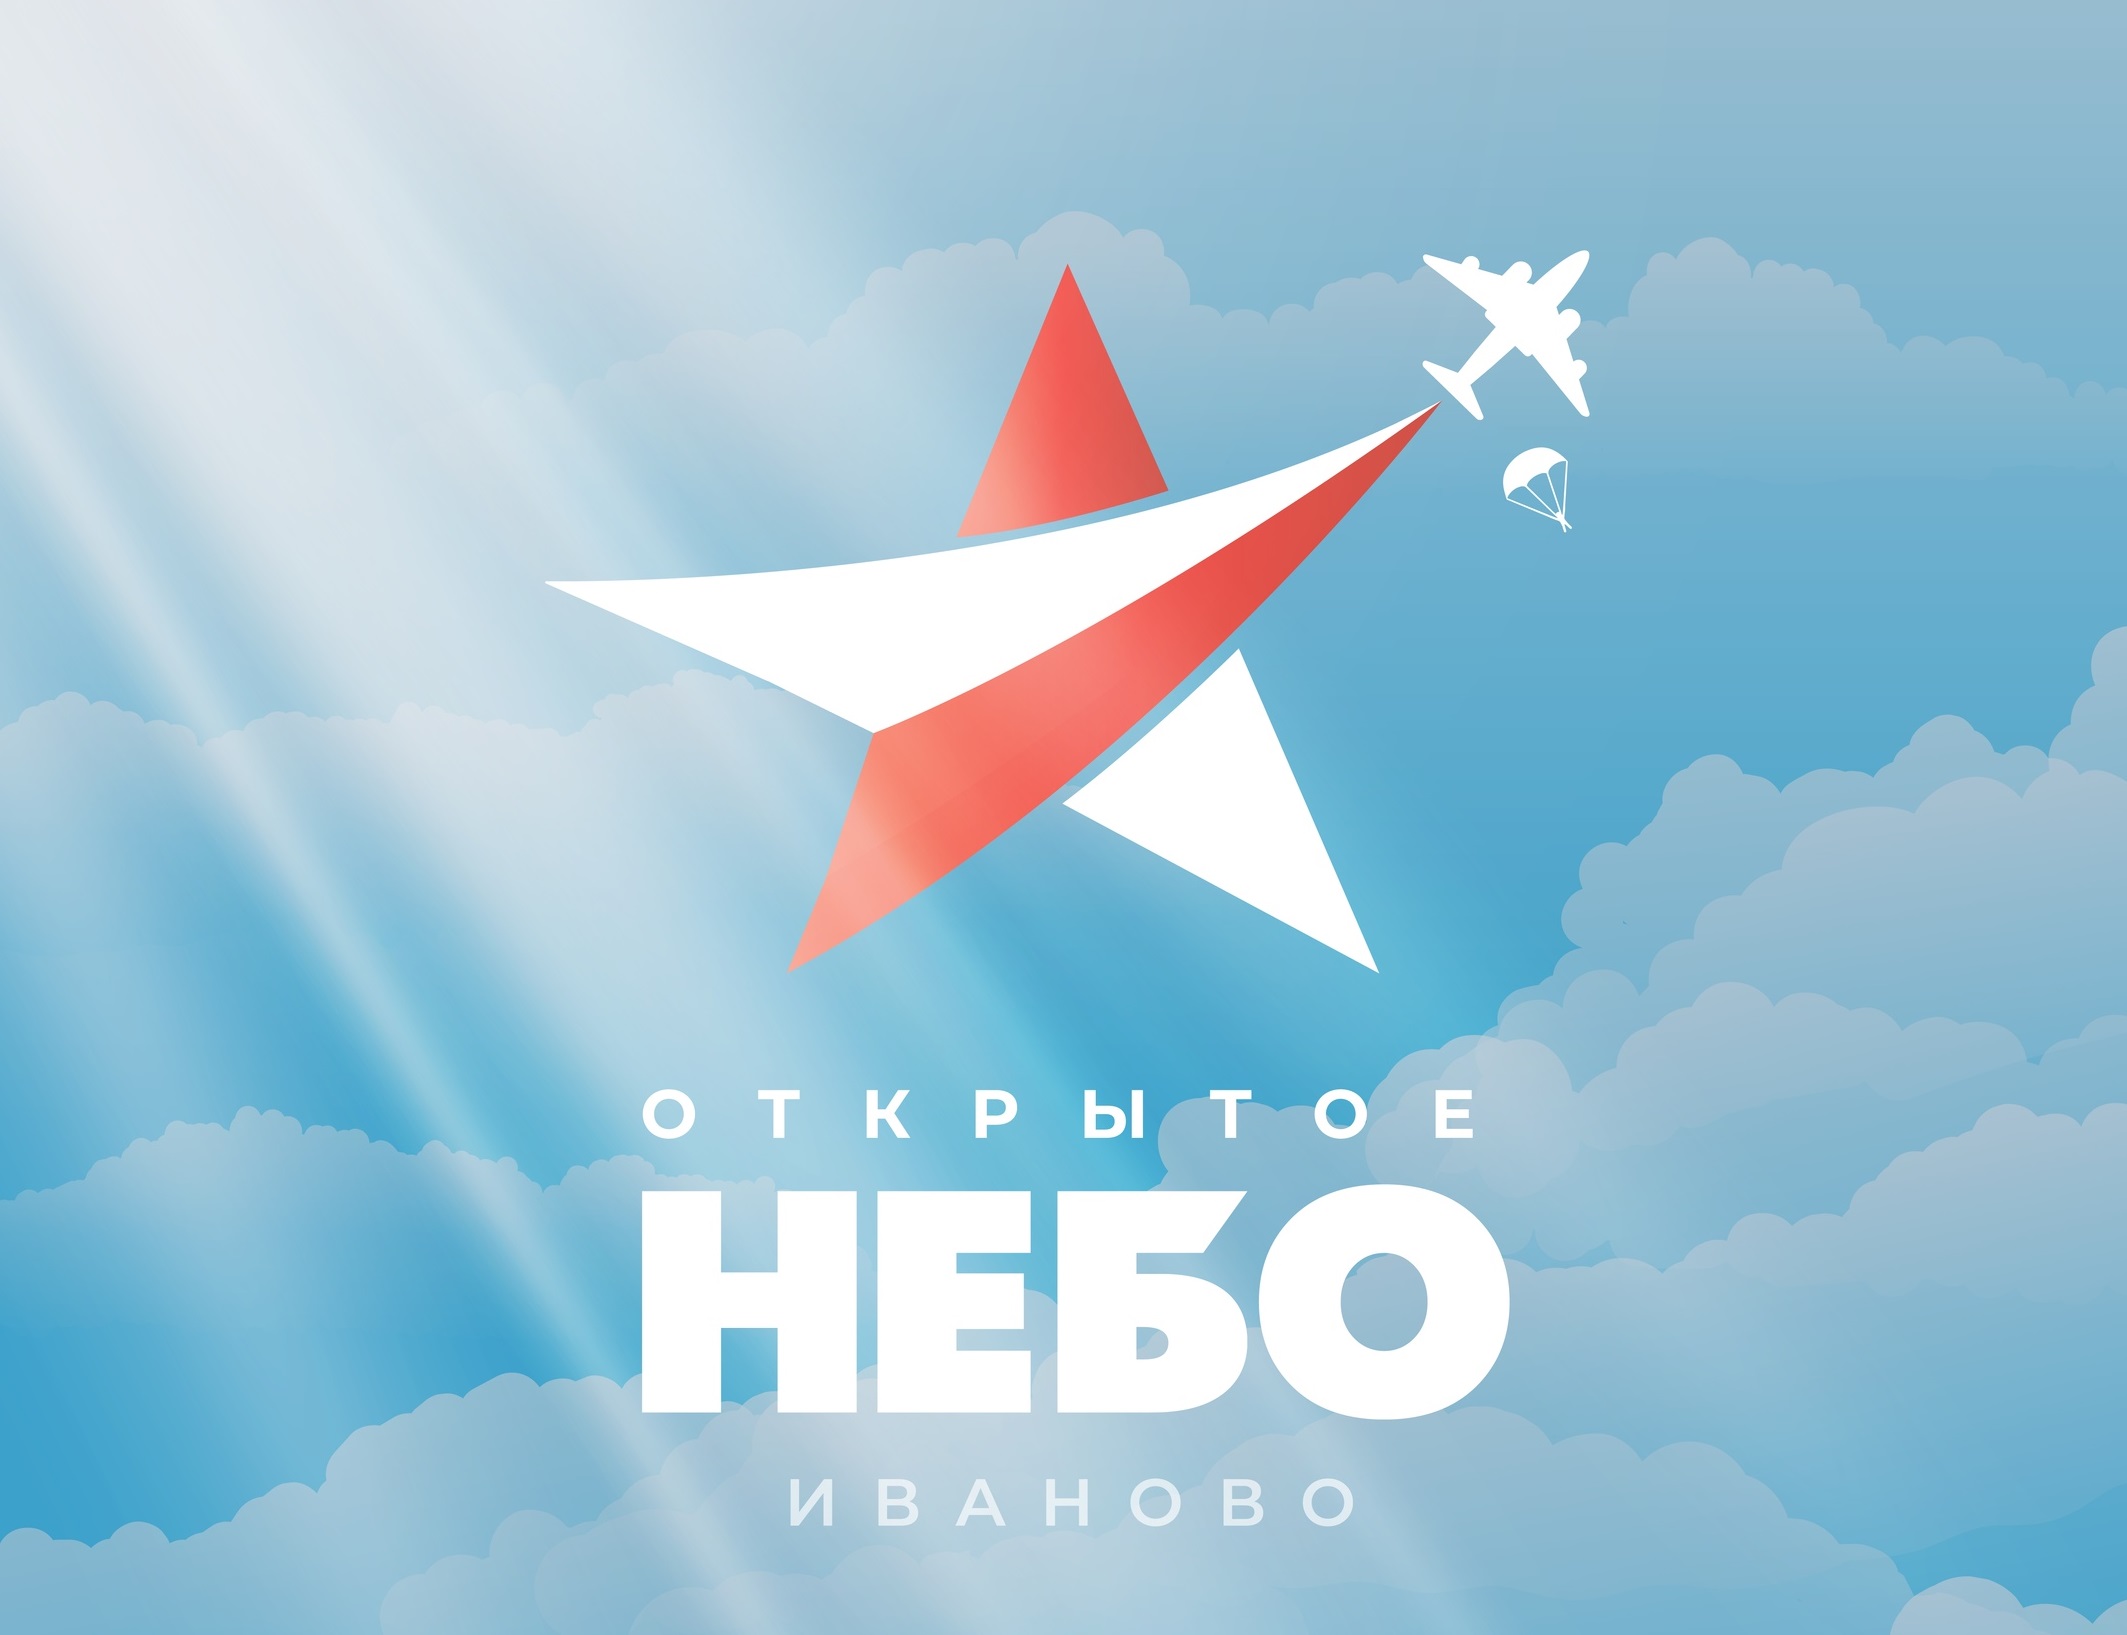 В Иванове готовятся к празднику "Открытое небо" (АФИШИ, КАРТА)